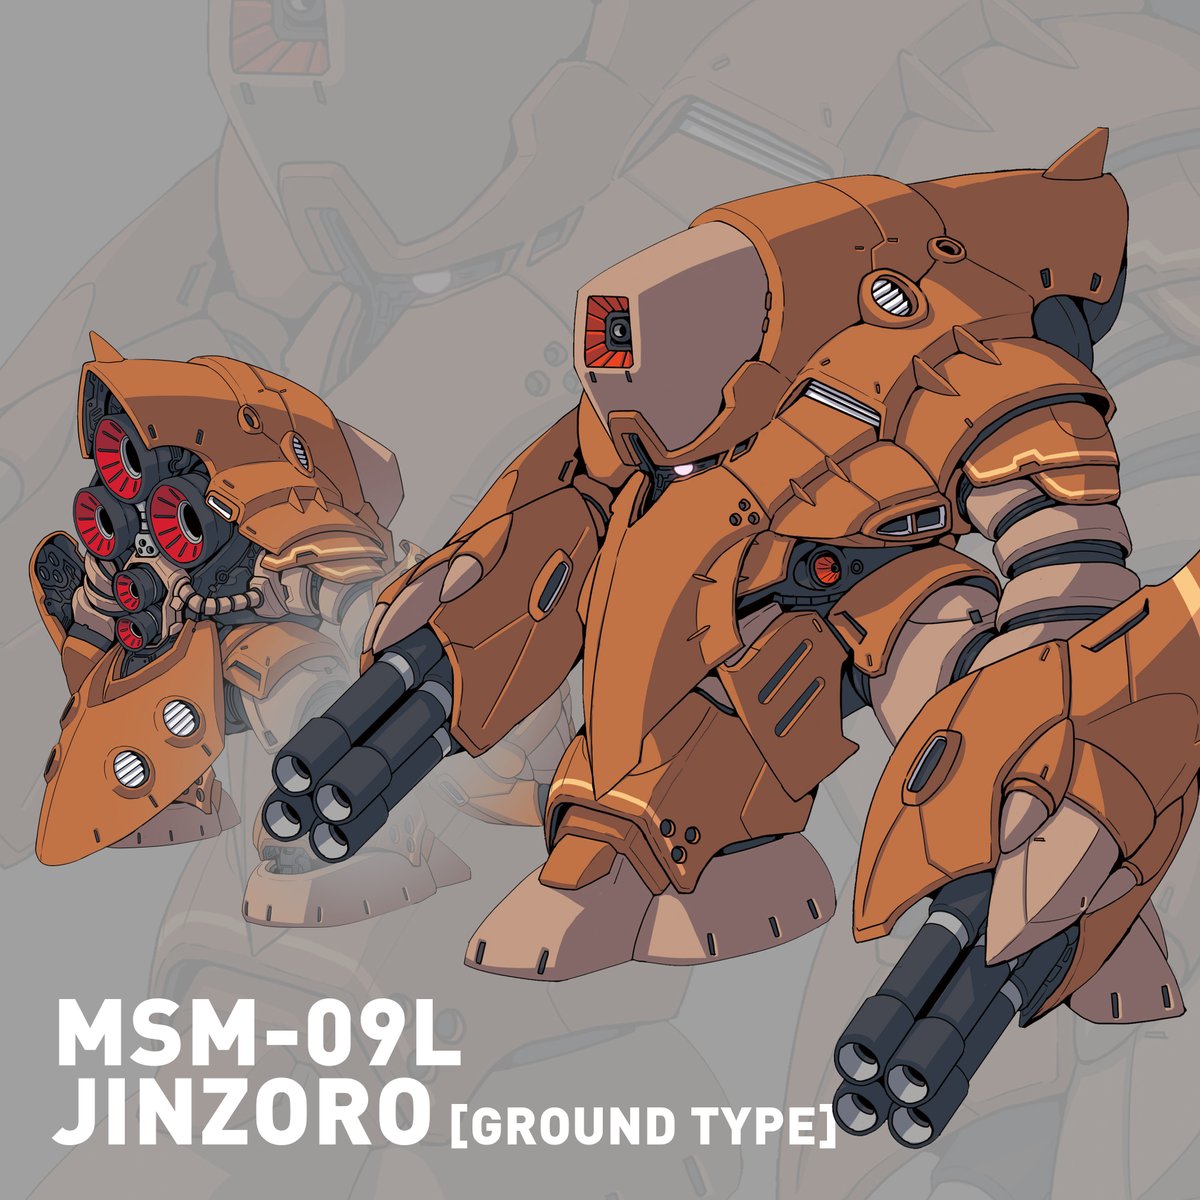 MSM-09L JINZORO [Ground Type] #mecha #メカ #robot #gundam #ガンダム #ジオン #zeon
https://t.co/K9fihvckQh 